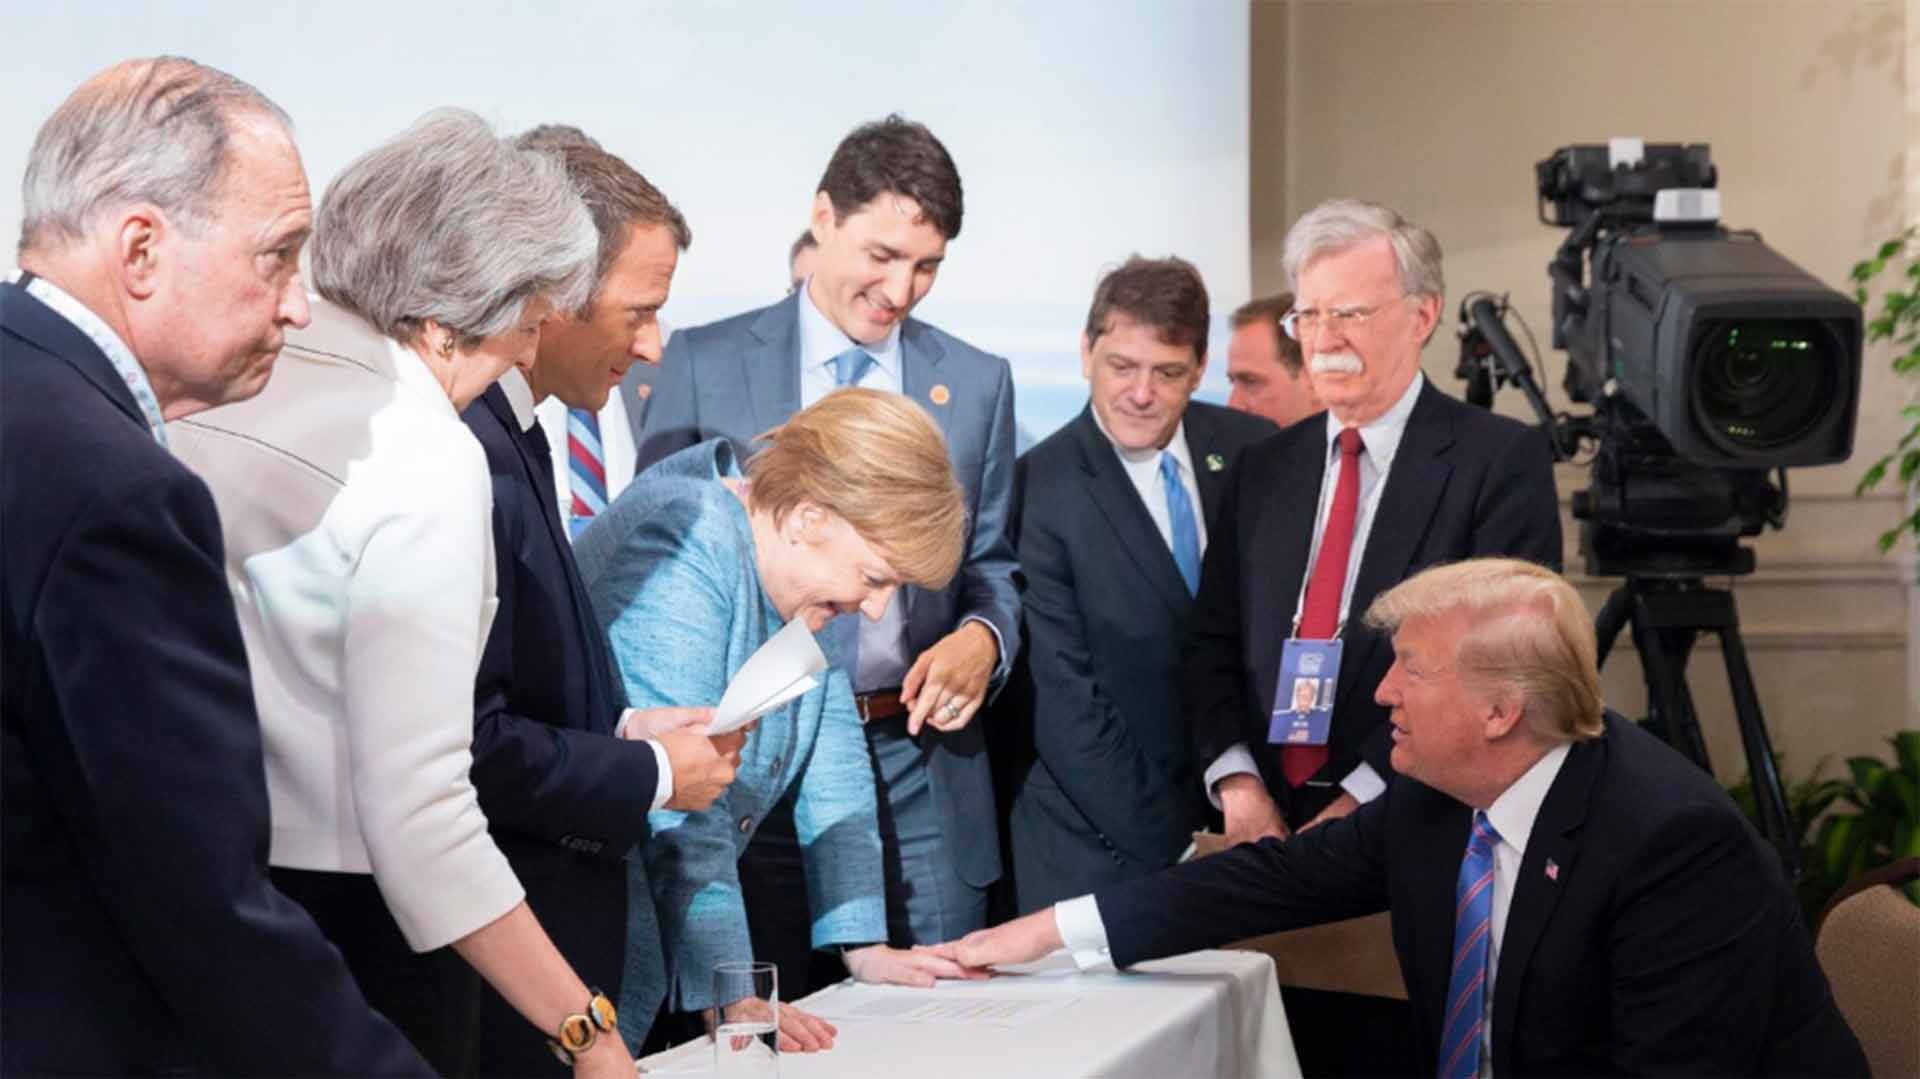 Trump muestra su versión de la polémica foto en el G7 y presume de su relación con Merkel